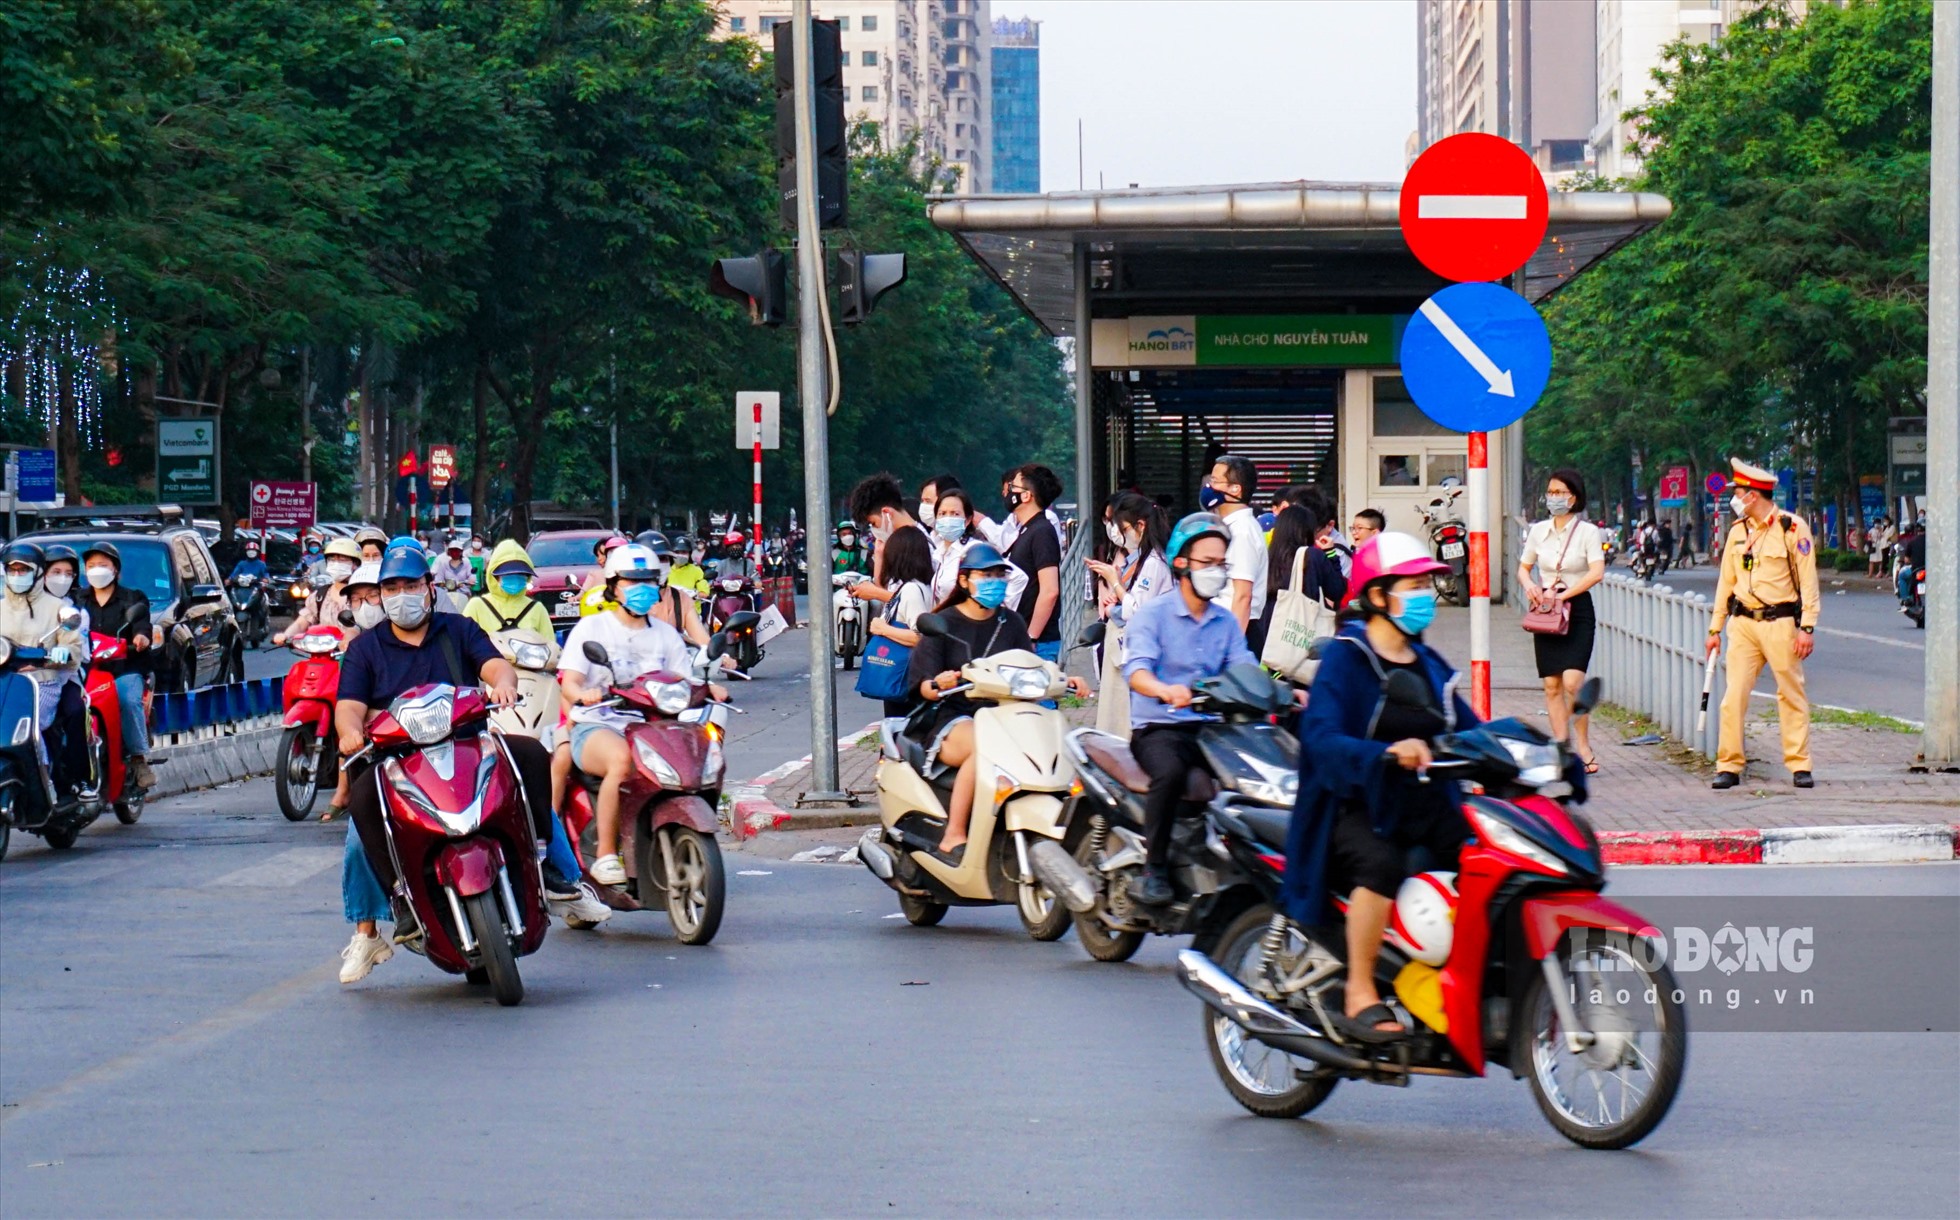 Tại đường Lê Văn Lương (Cầu Giấy, Hà Nội) do tình trạng ùn tắc kéo dài nên nhiều người dân “phi” cả vào làn đường BRT (làn đường chuyên dụng dành cho xe buýt nhanh) để đi.